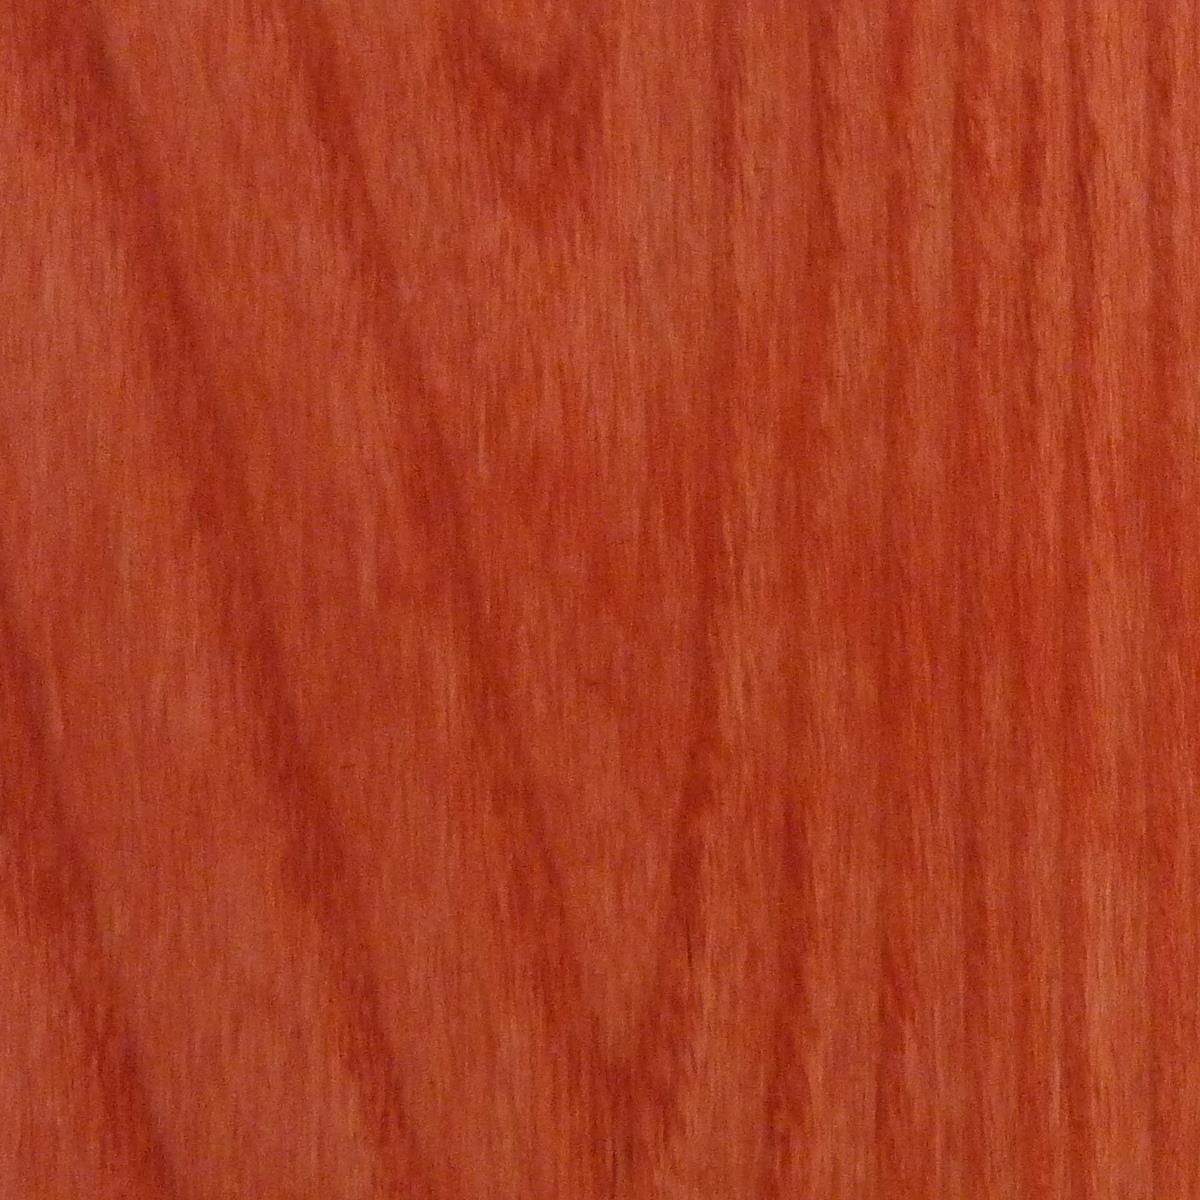 dartfords Tomato Red Interior Spirit Based Wood Dye - 1 litre Tin